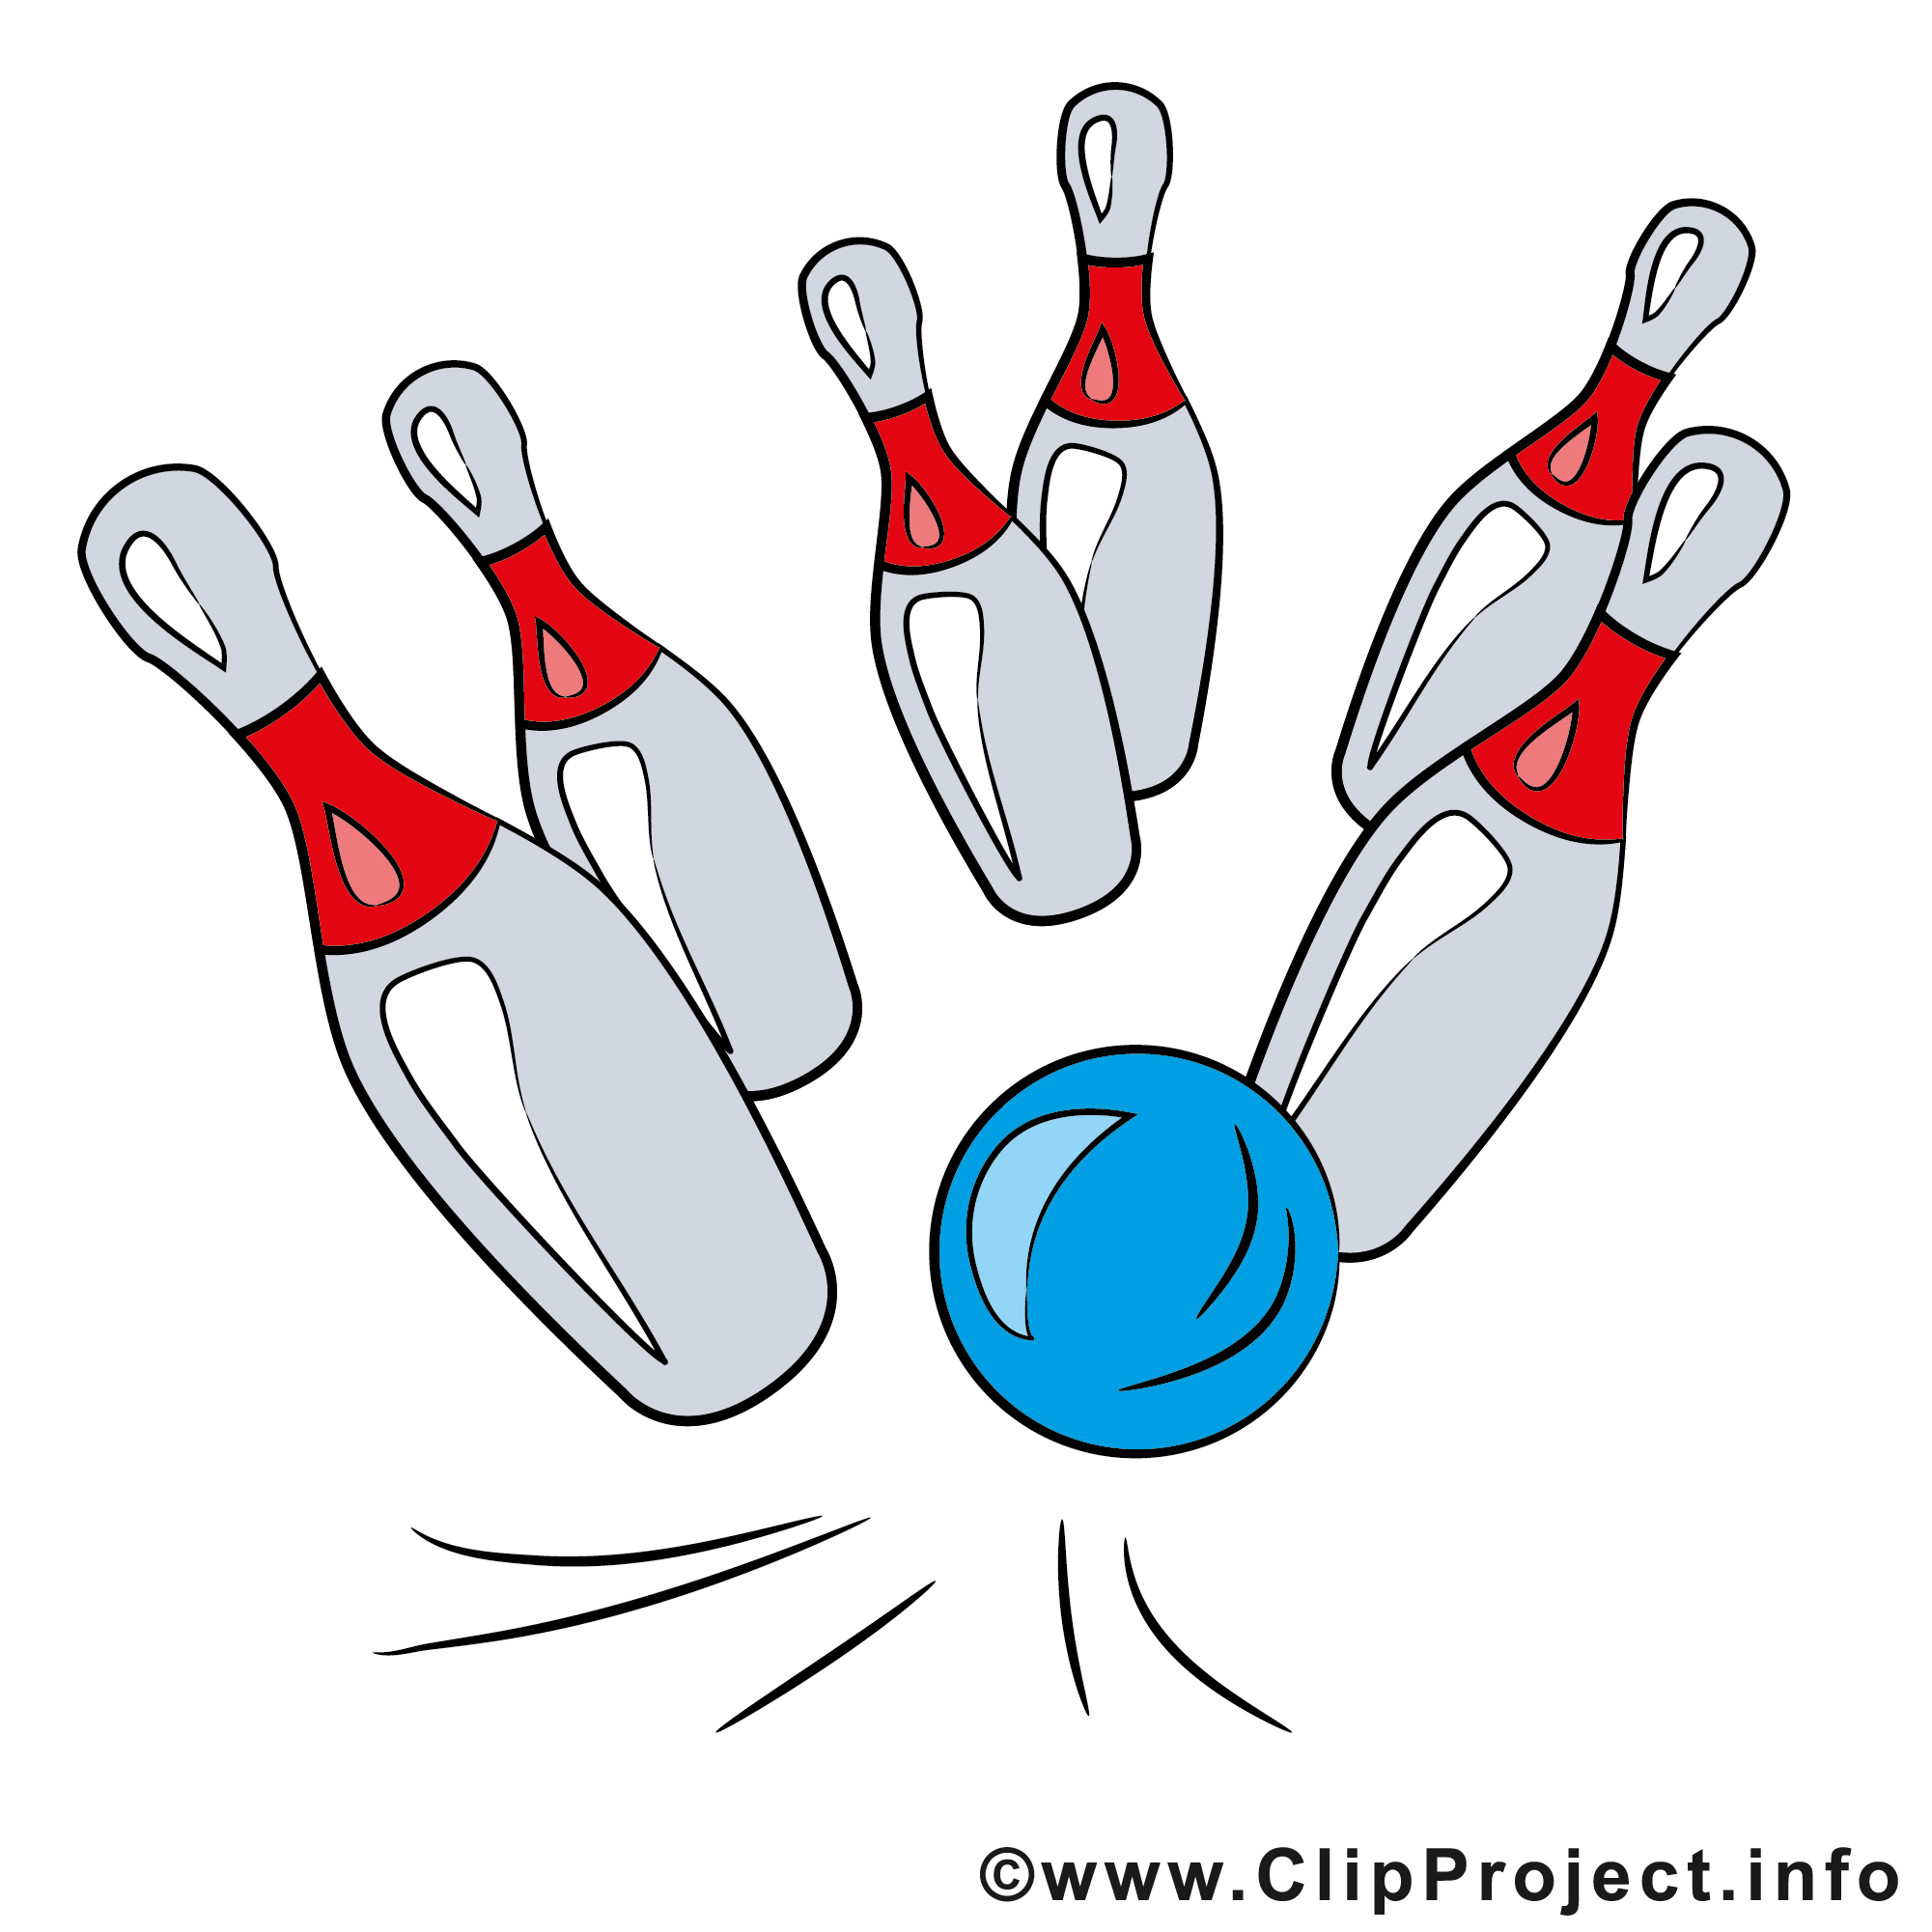 clipart gratuit quille bowling - photo #3